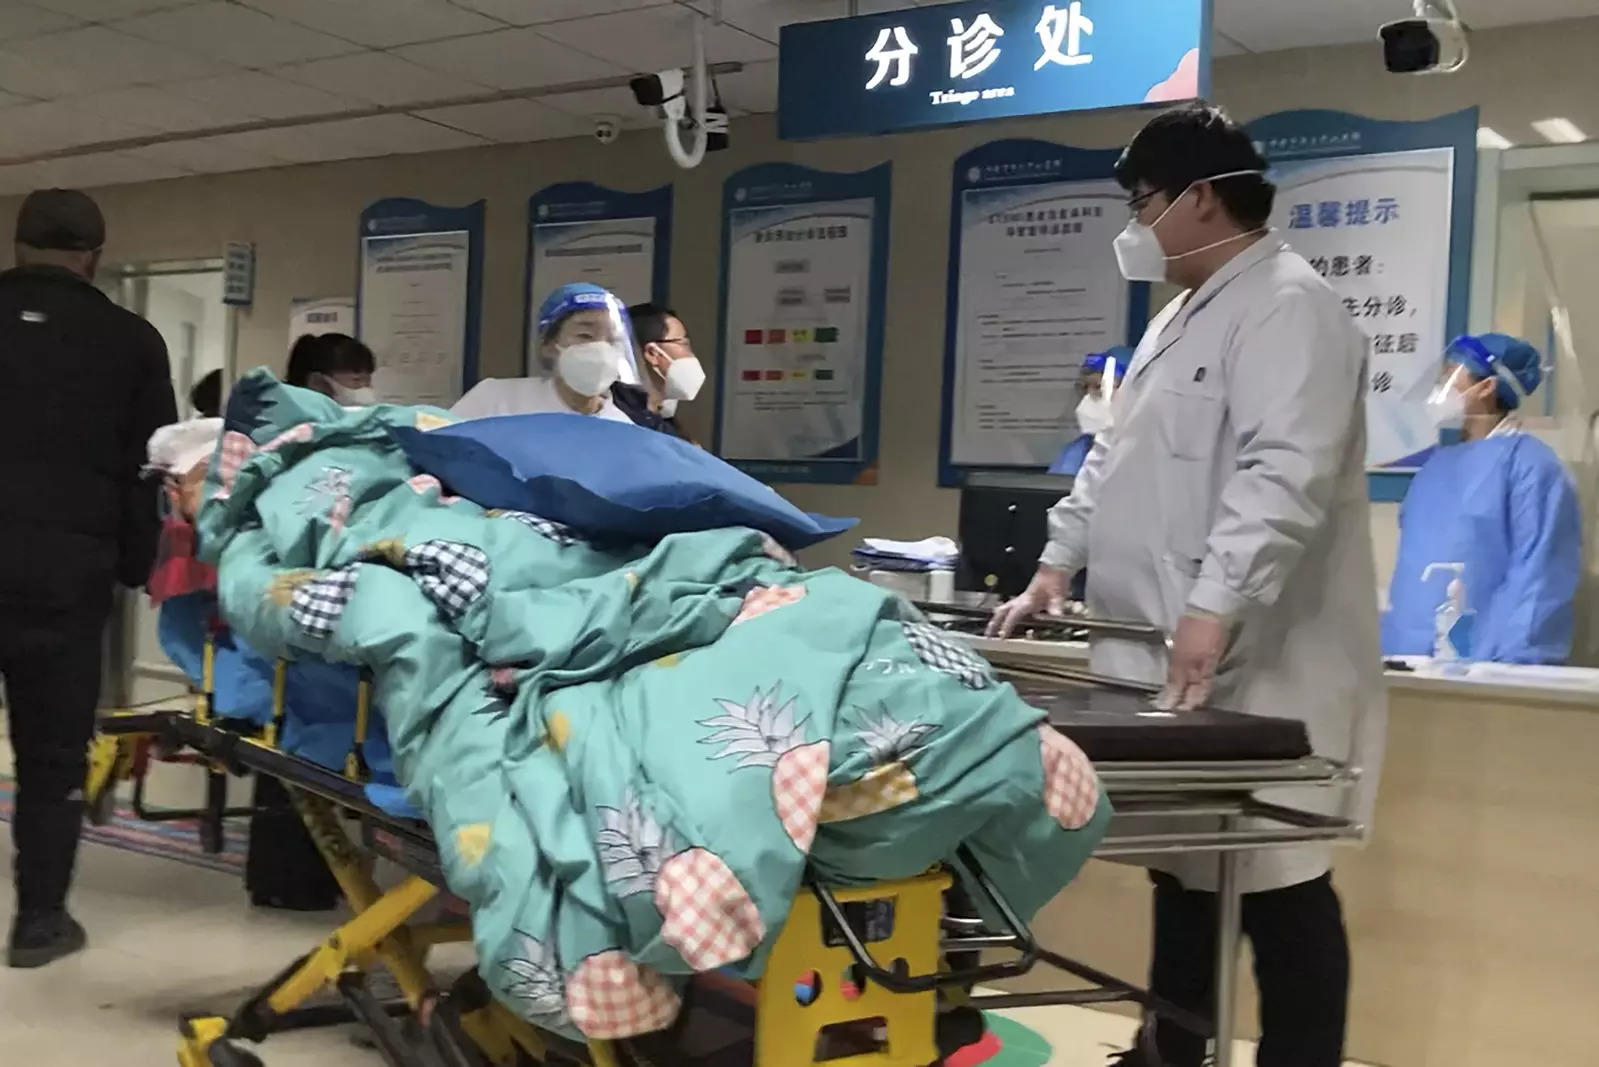 Amid Covid resurgence, China's hospitals seem to be filling up: WHO